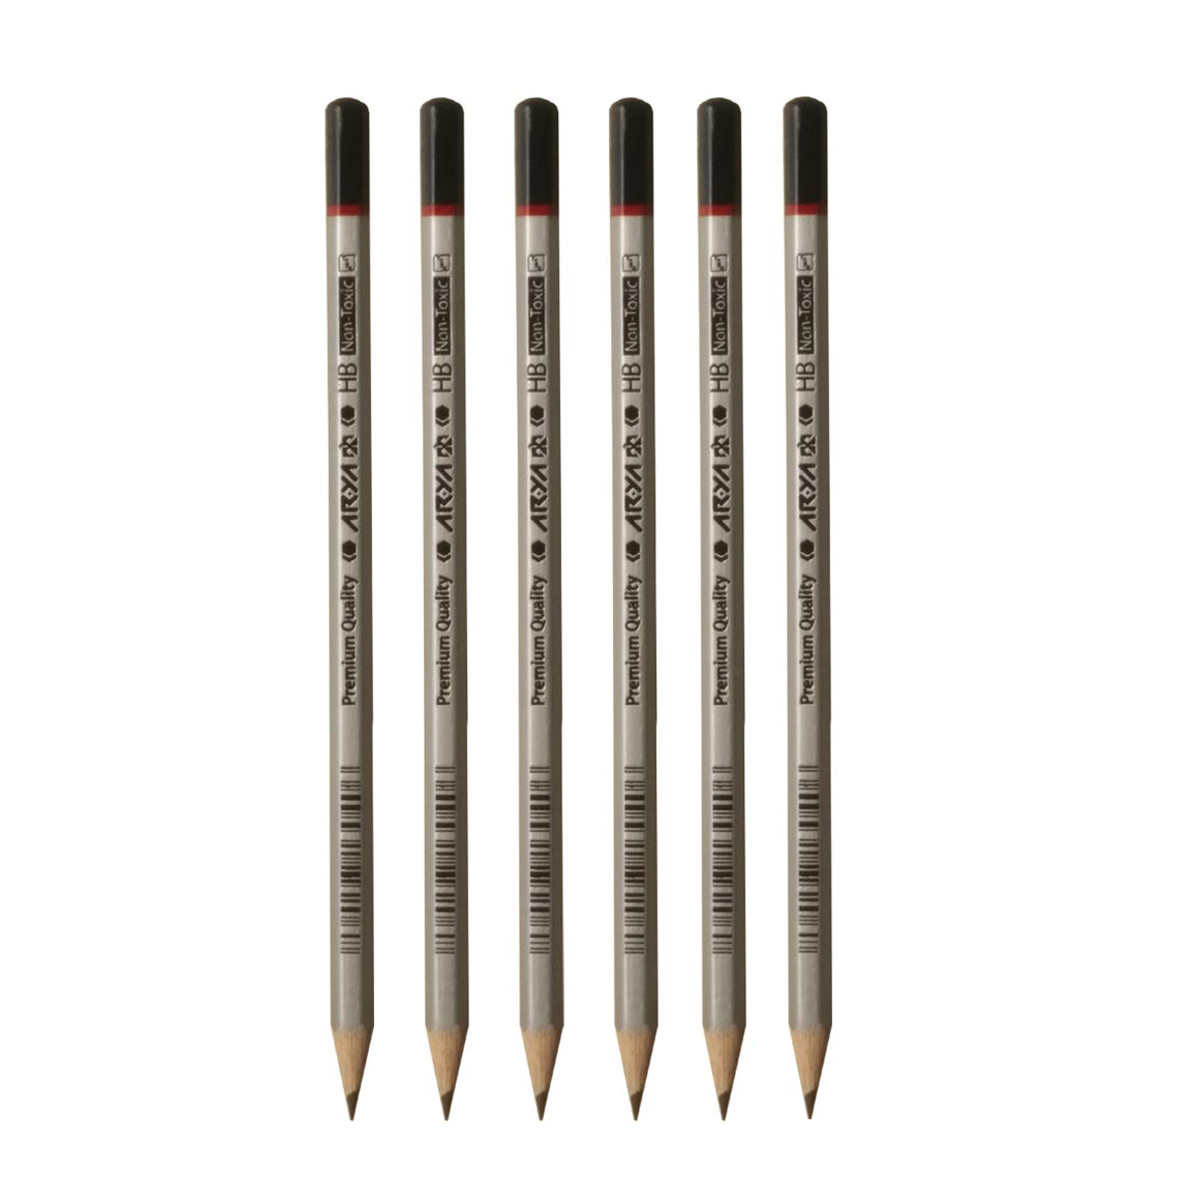 مداد مشکی آریا مدل Premium Quality کد 3050 بسته 6 عددی